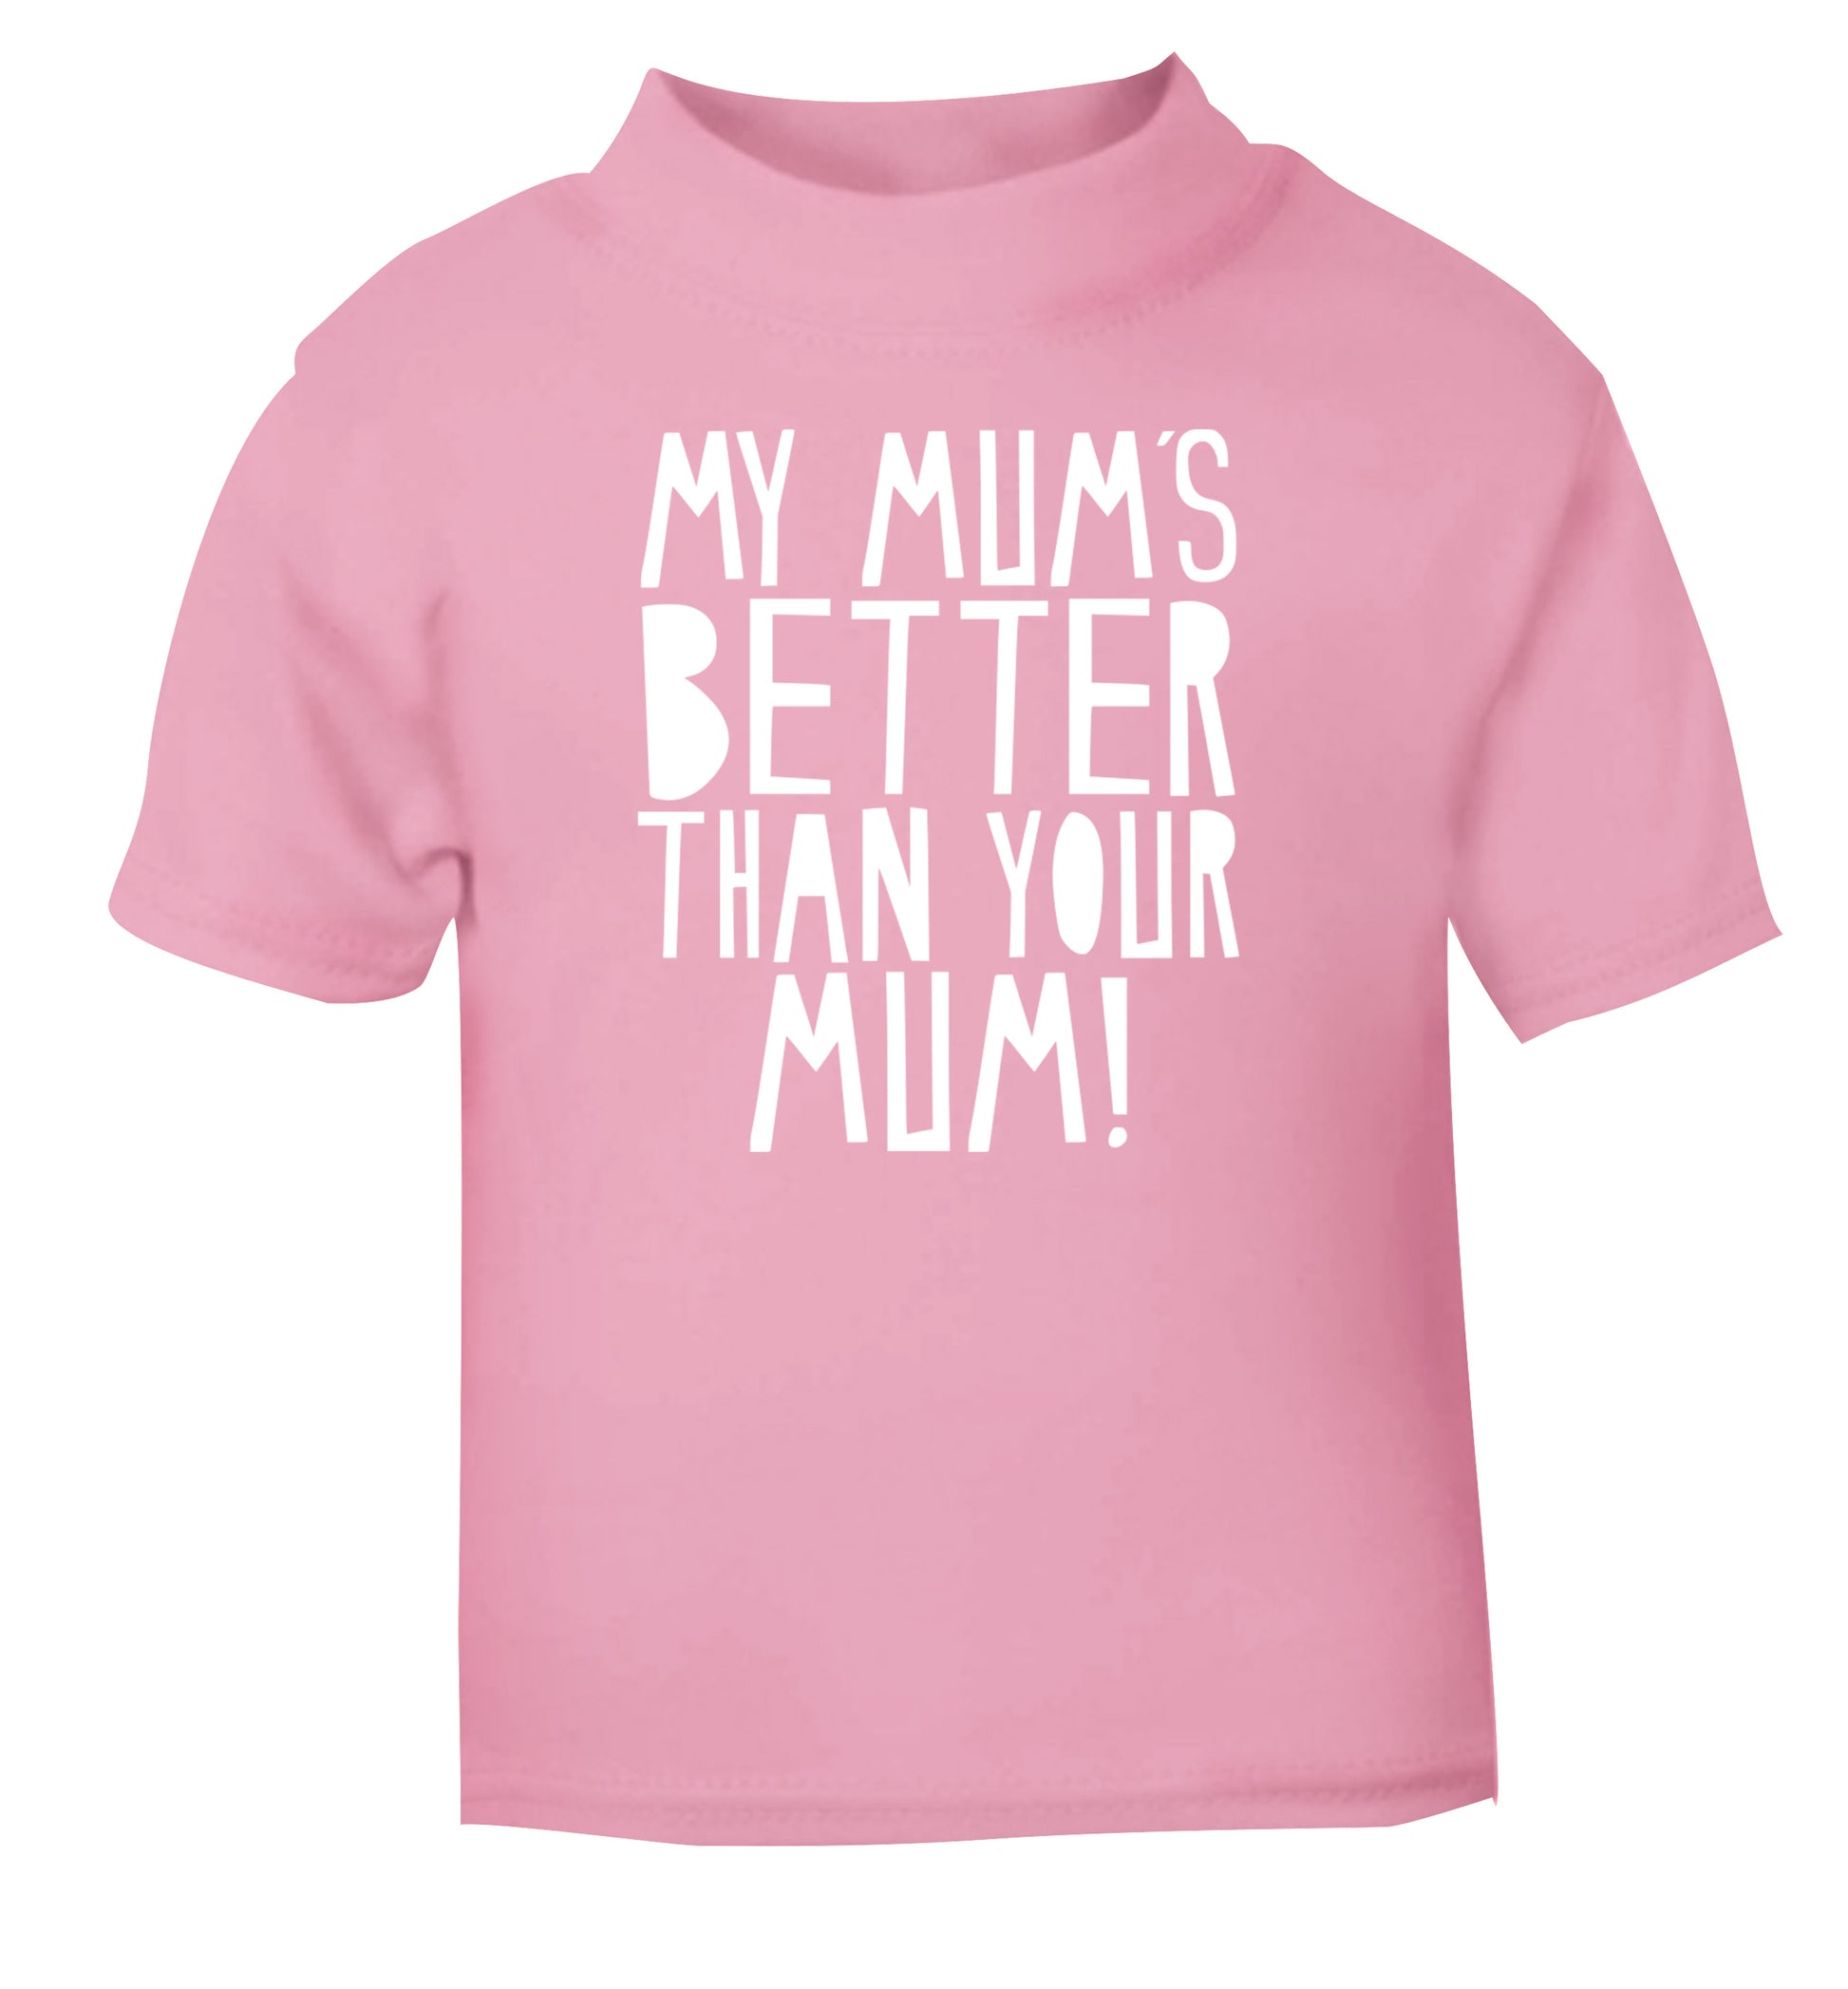 My mum's better than your mum light pink baby toddler Tshirt 2 Years